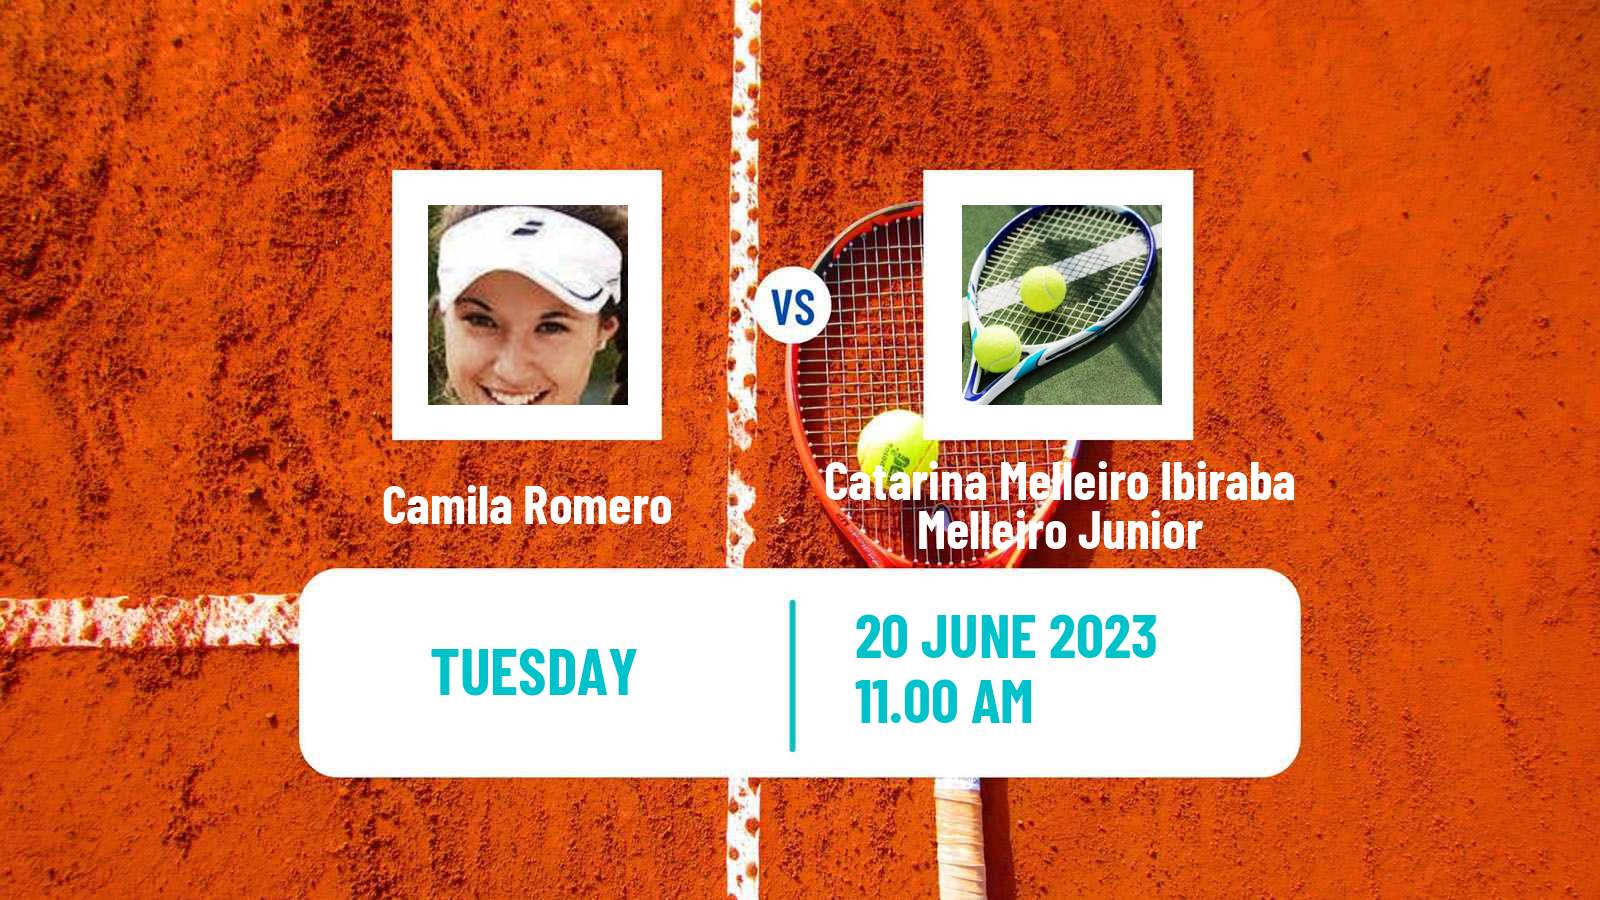 Tennis ITF W15 Buenos Aires Women Camila Romero - Catarina Melleiro Ibiraba Melleiro Junior